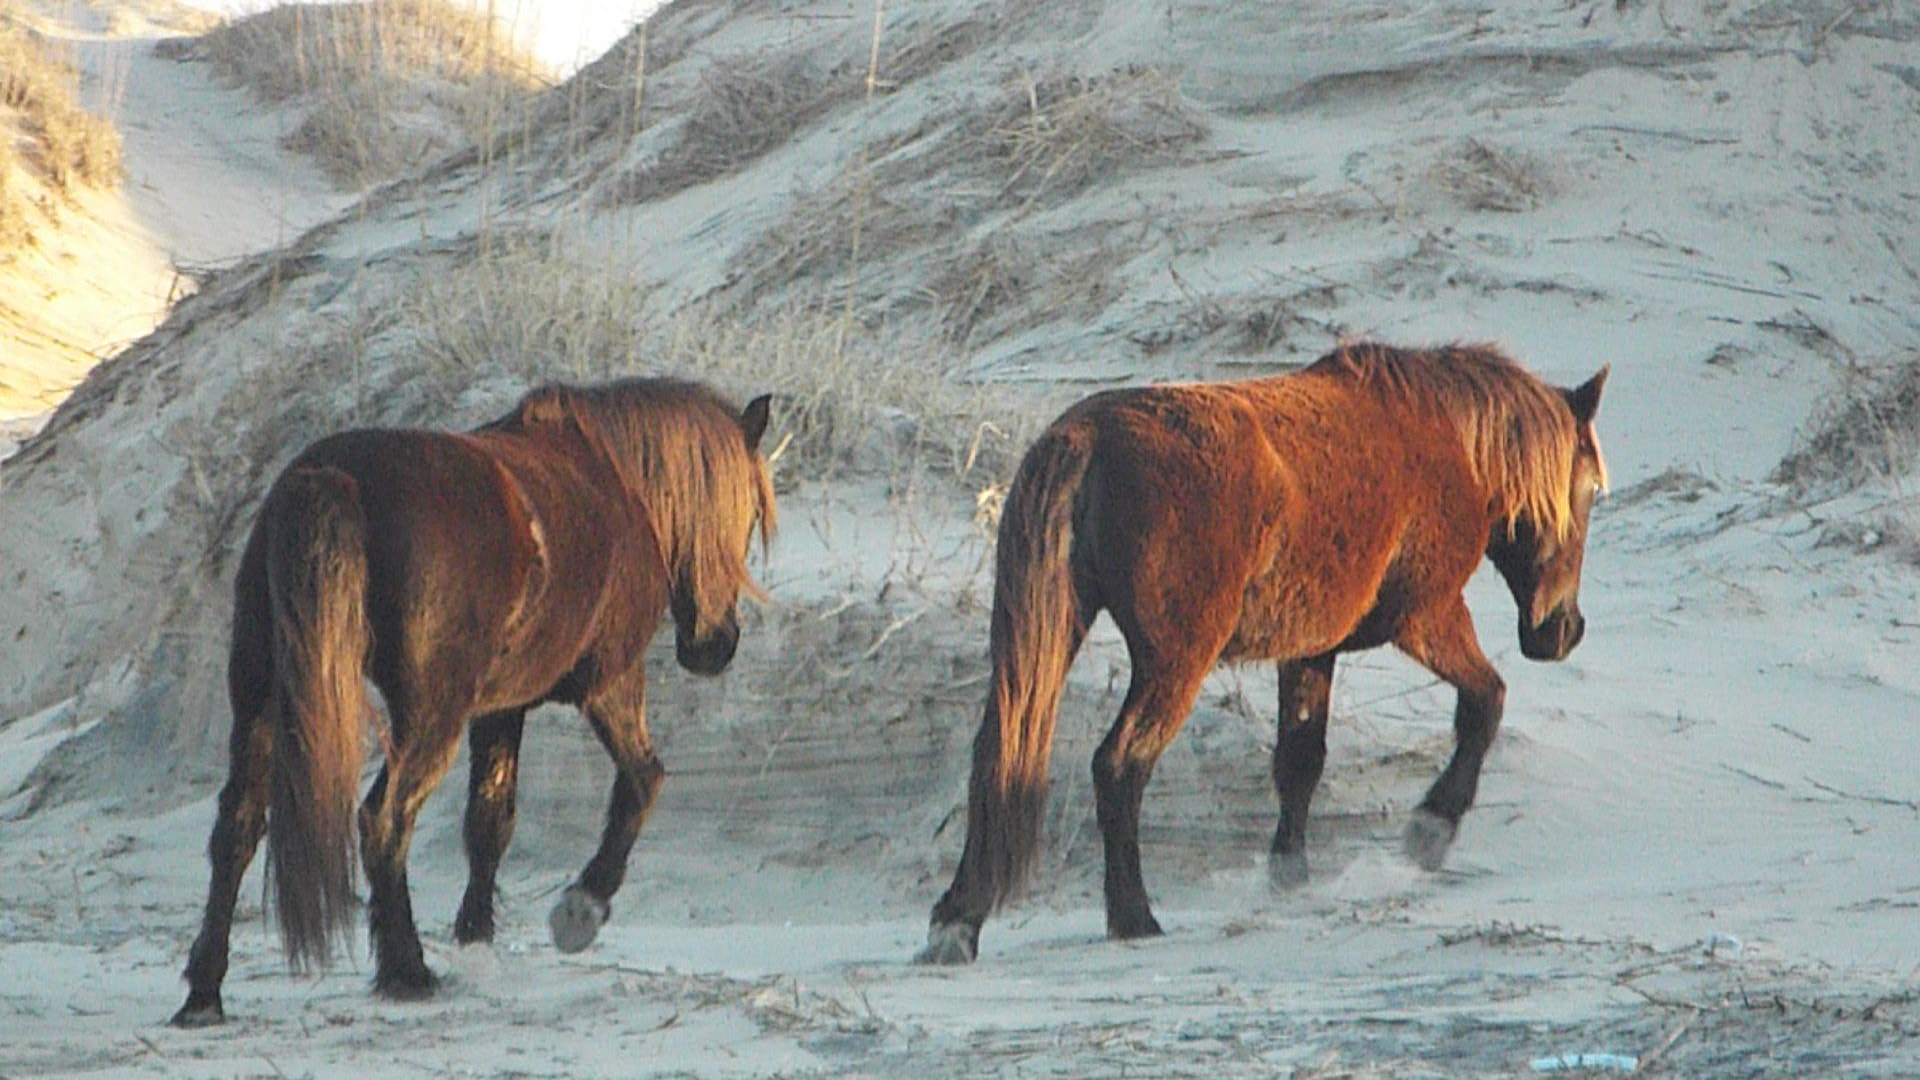 Fujifilm FinePix S9200 S9250 S9150 sample photo. 2 wild horses climb dune photography